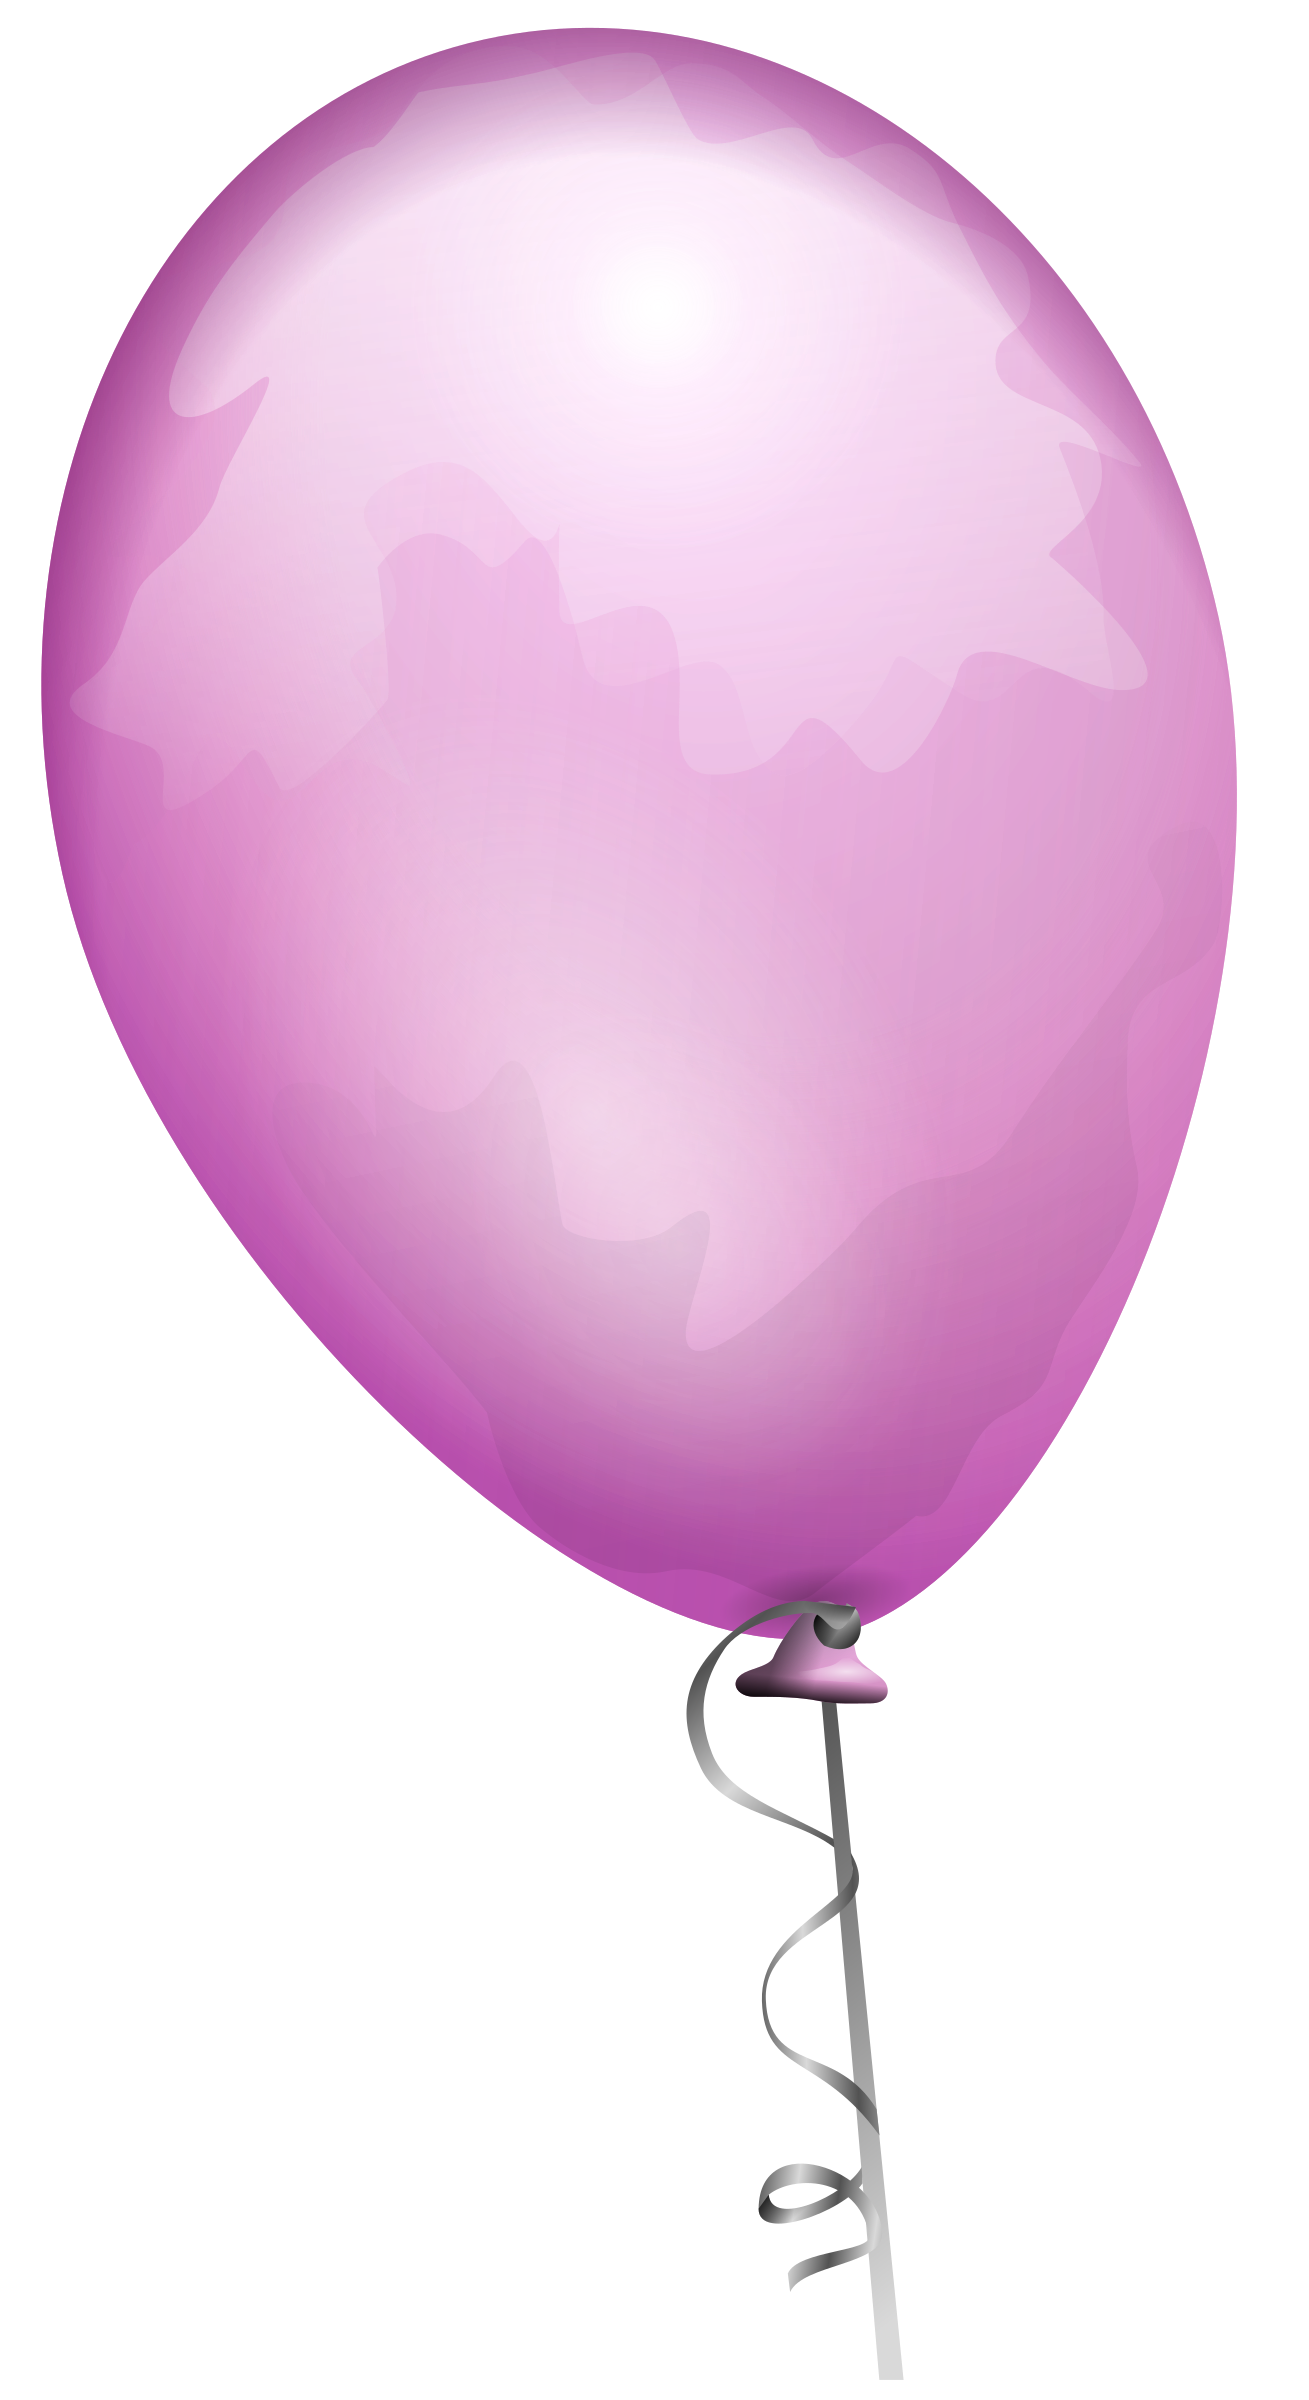 Pink balloon big image. Clipart balloons magenta